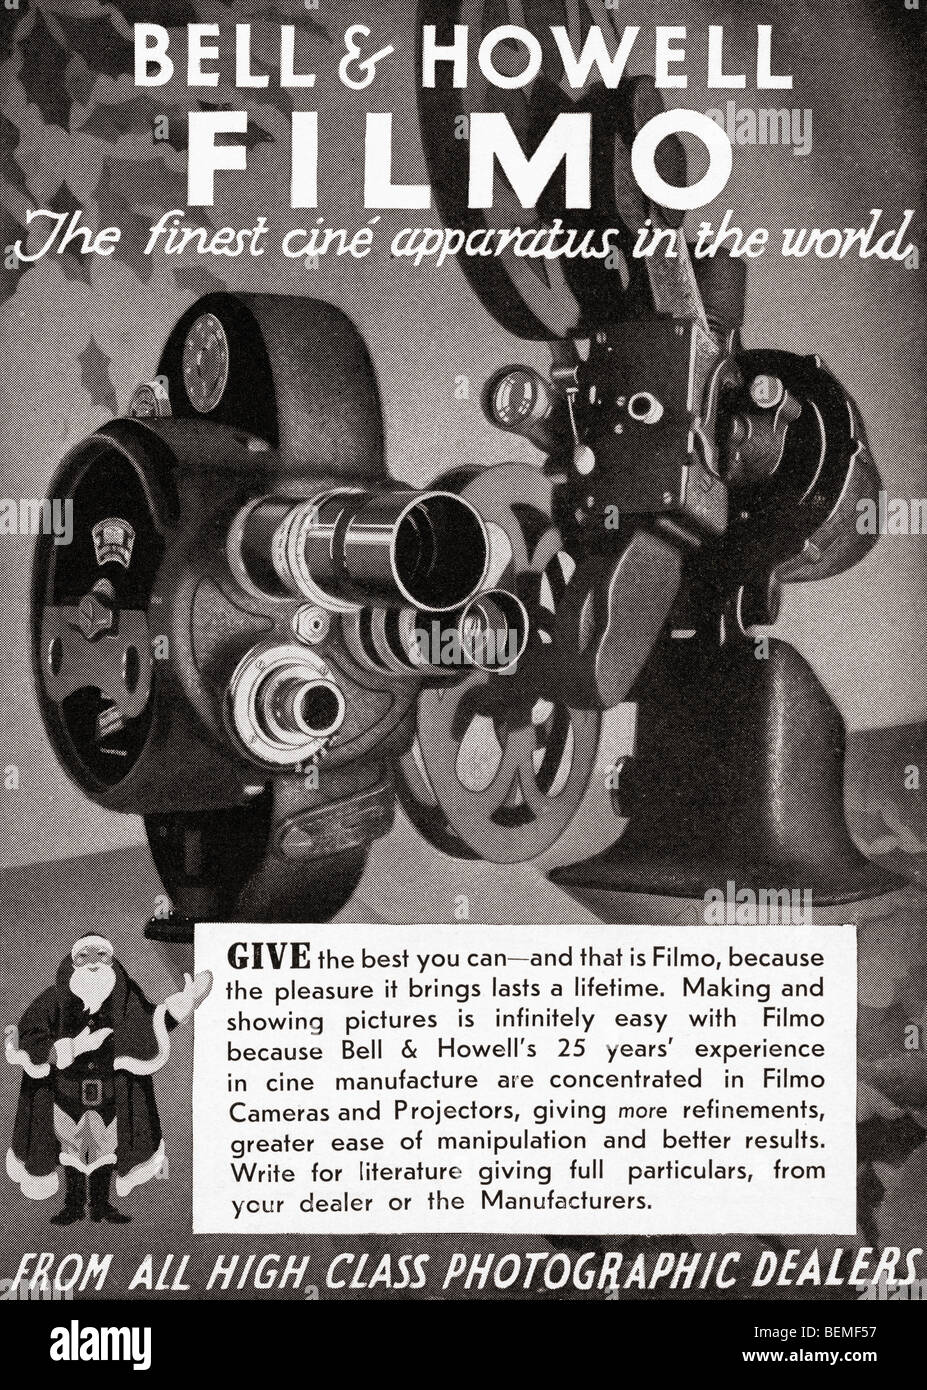 1930 pubblicità per la campana e Howell Filmo fotocamera cine. Dal Illustrated London News, numero di Natale, 1933. Foto Stock